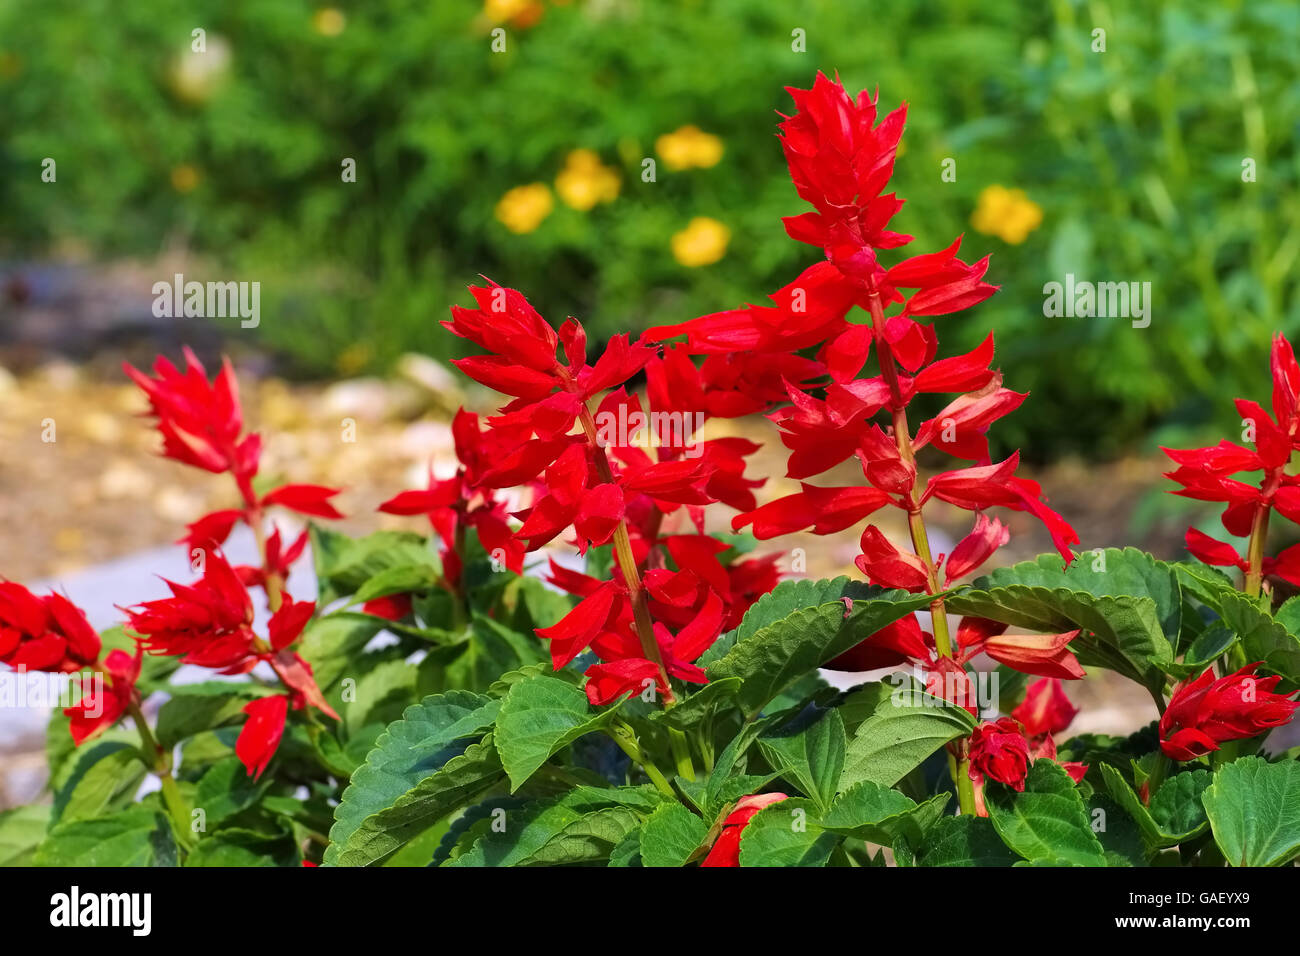 Feuersalbei - Salvia splendens or scarlet sage in summer garden Stock Photo